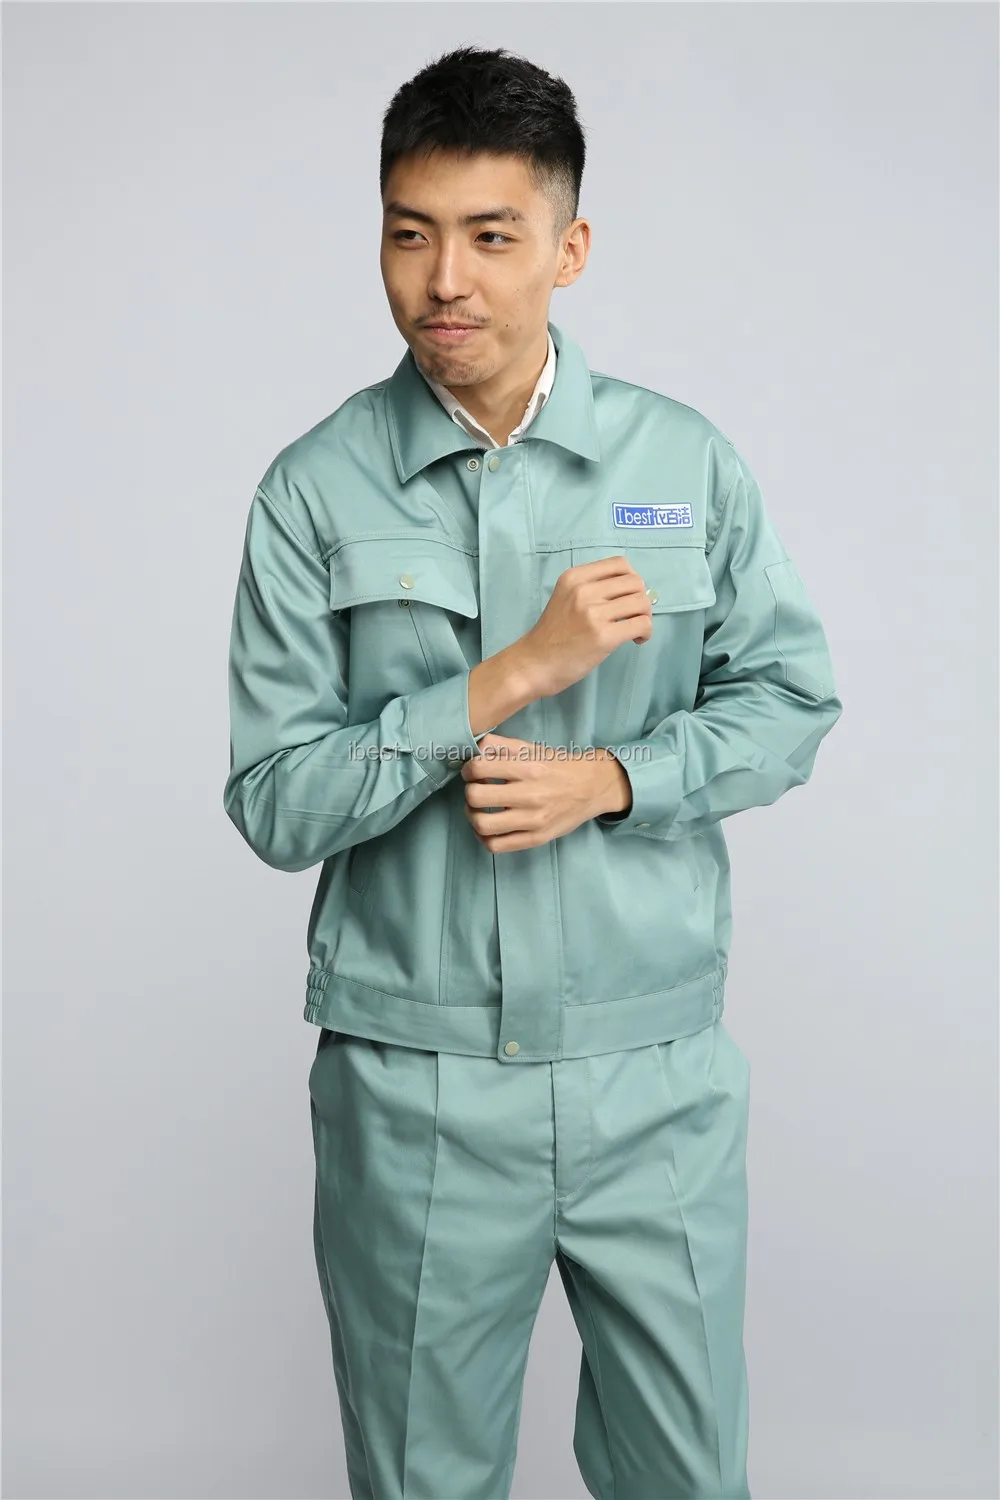 Comfortable Workwear Engineering Work Clothing In Jacket Top - Buy Work ...